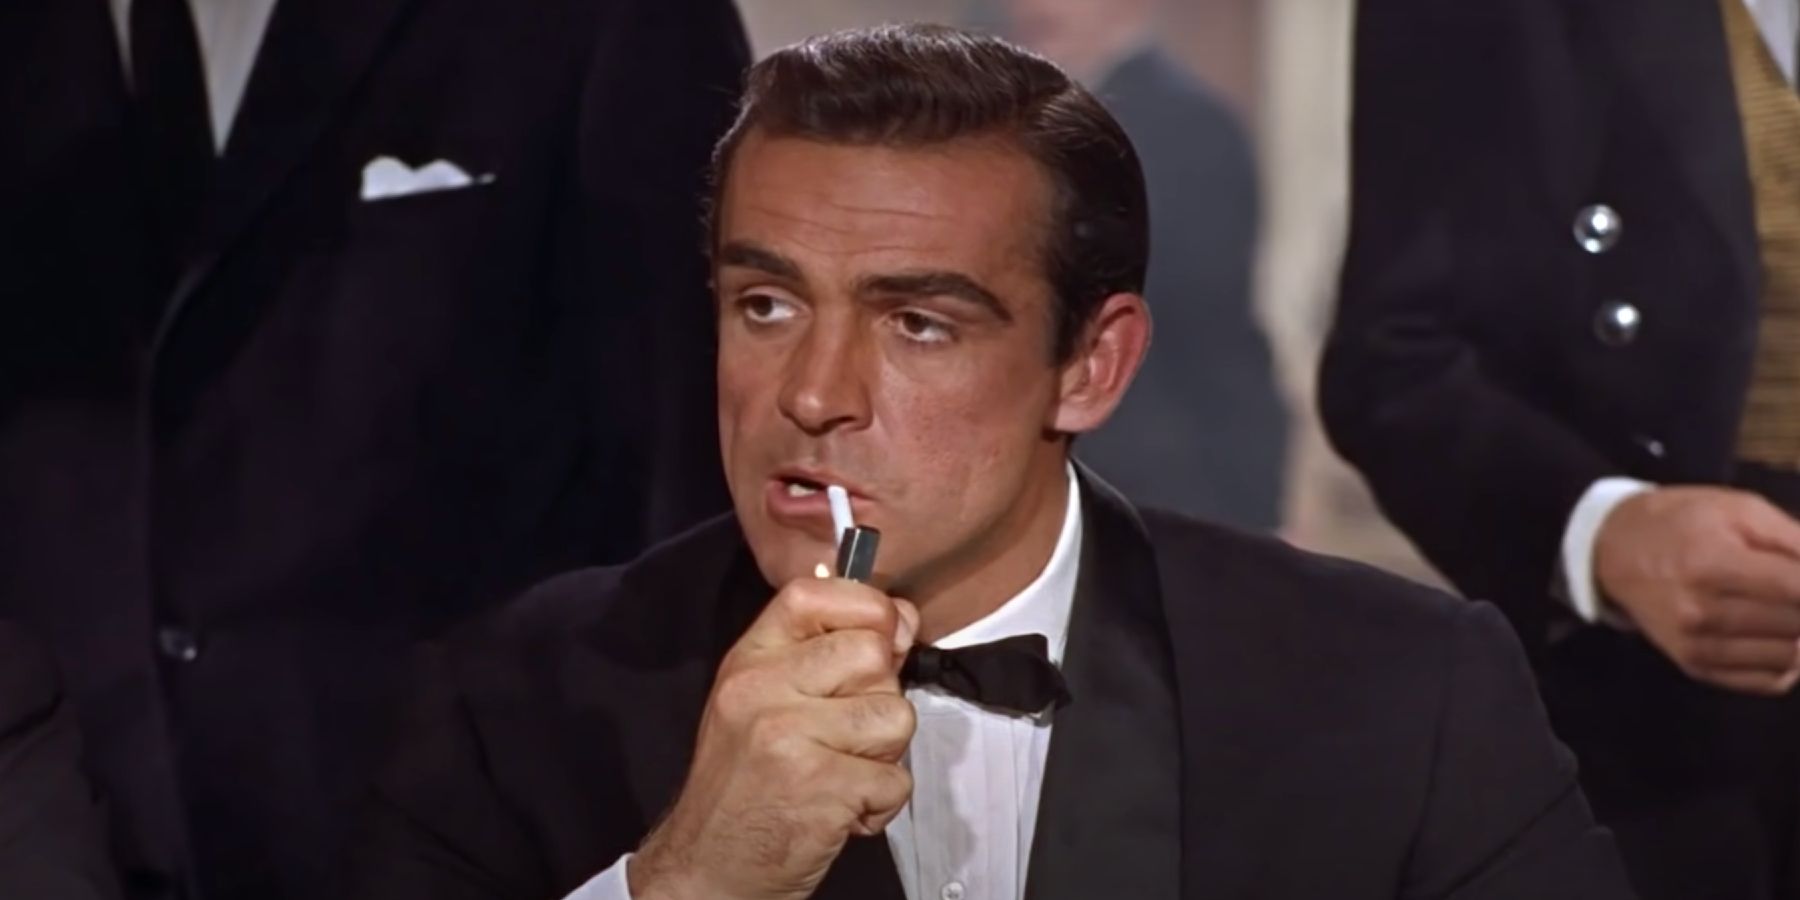 James Bond lighting his cigarette in Dr. No delivering the Bond, James Bond line